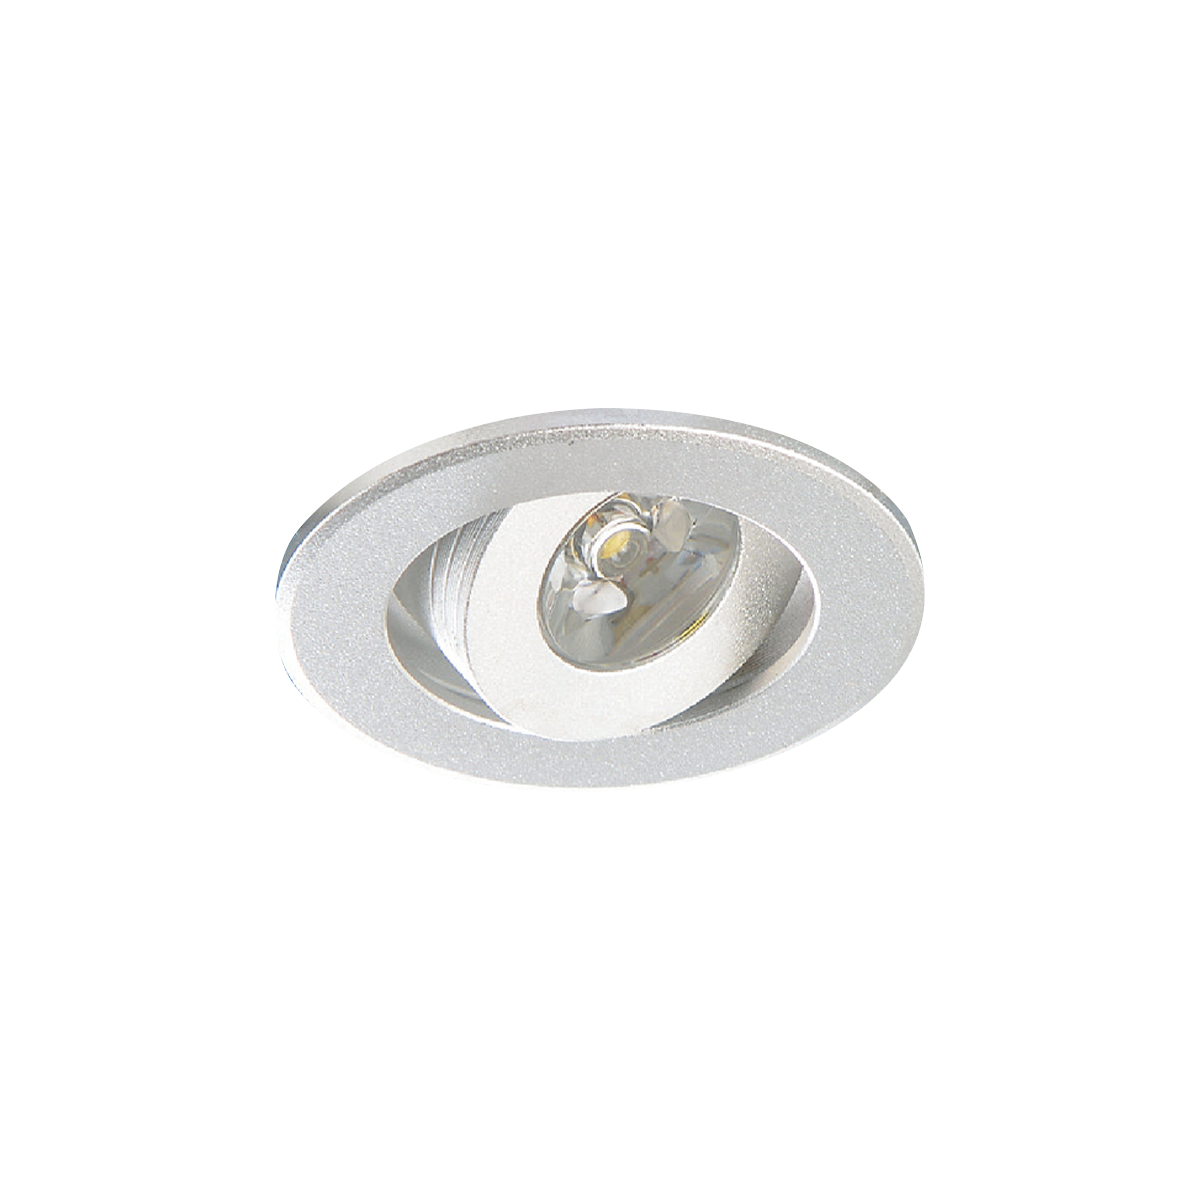 【KAO'S】LED 櫥櫃小崁燈 4.5cm 霧銀色 全電壓